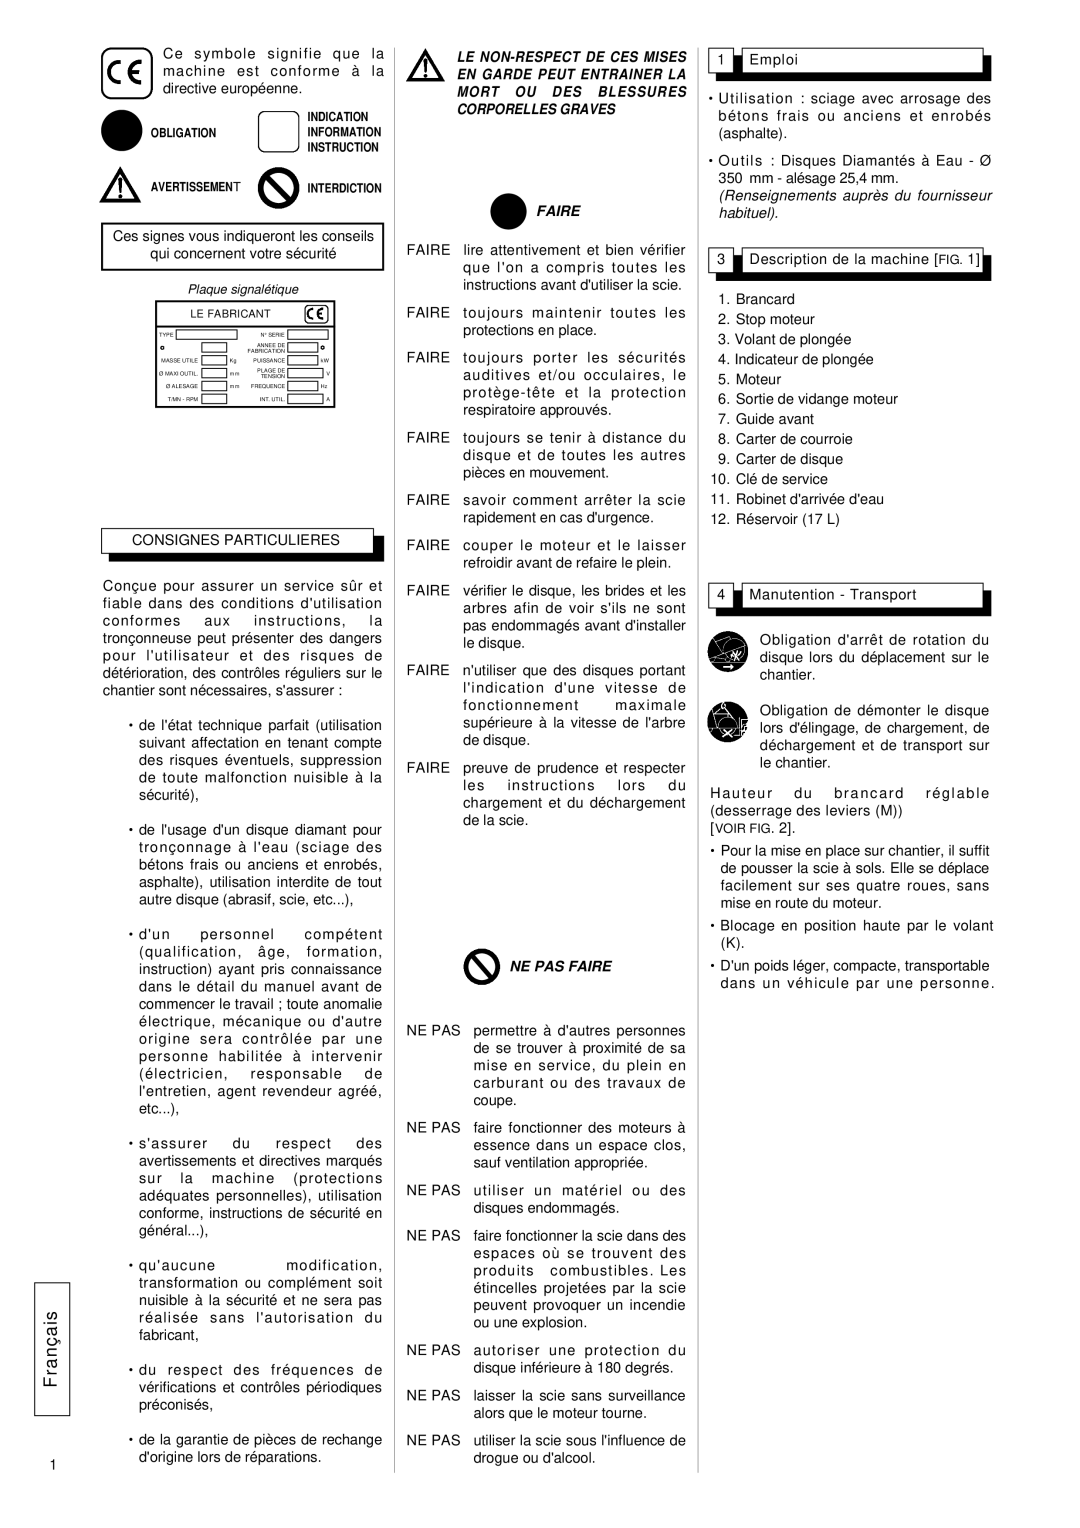 Husqvarna FS309, FS 305 manuel dutilisation Français, Ne Pas Faire, Renseignements auprès du fournisseur habituel 